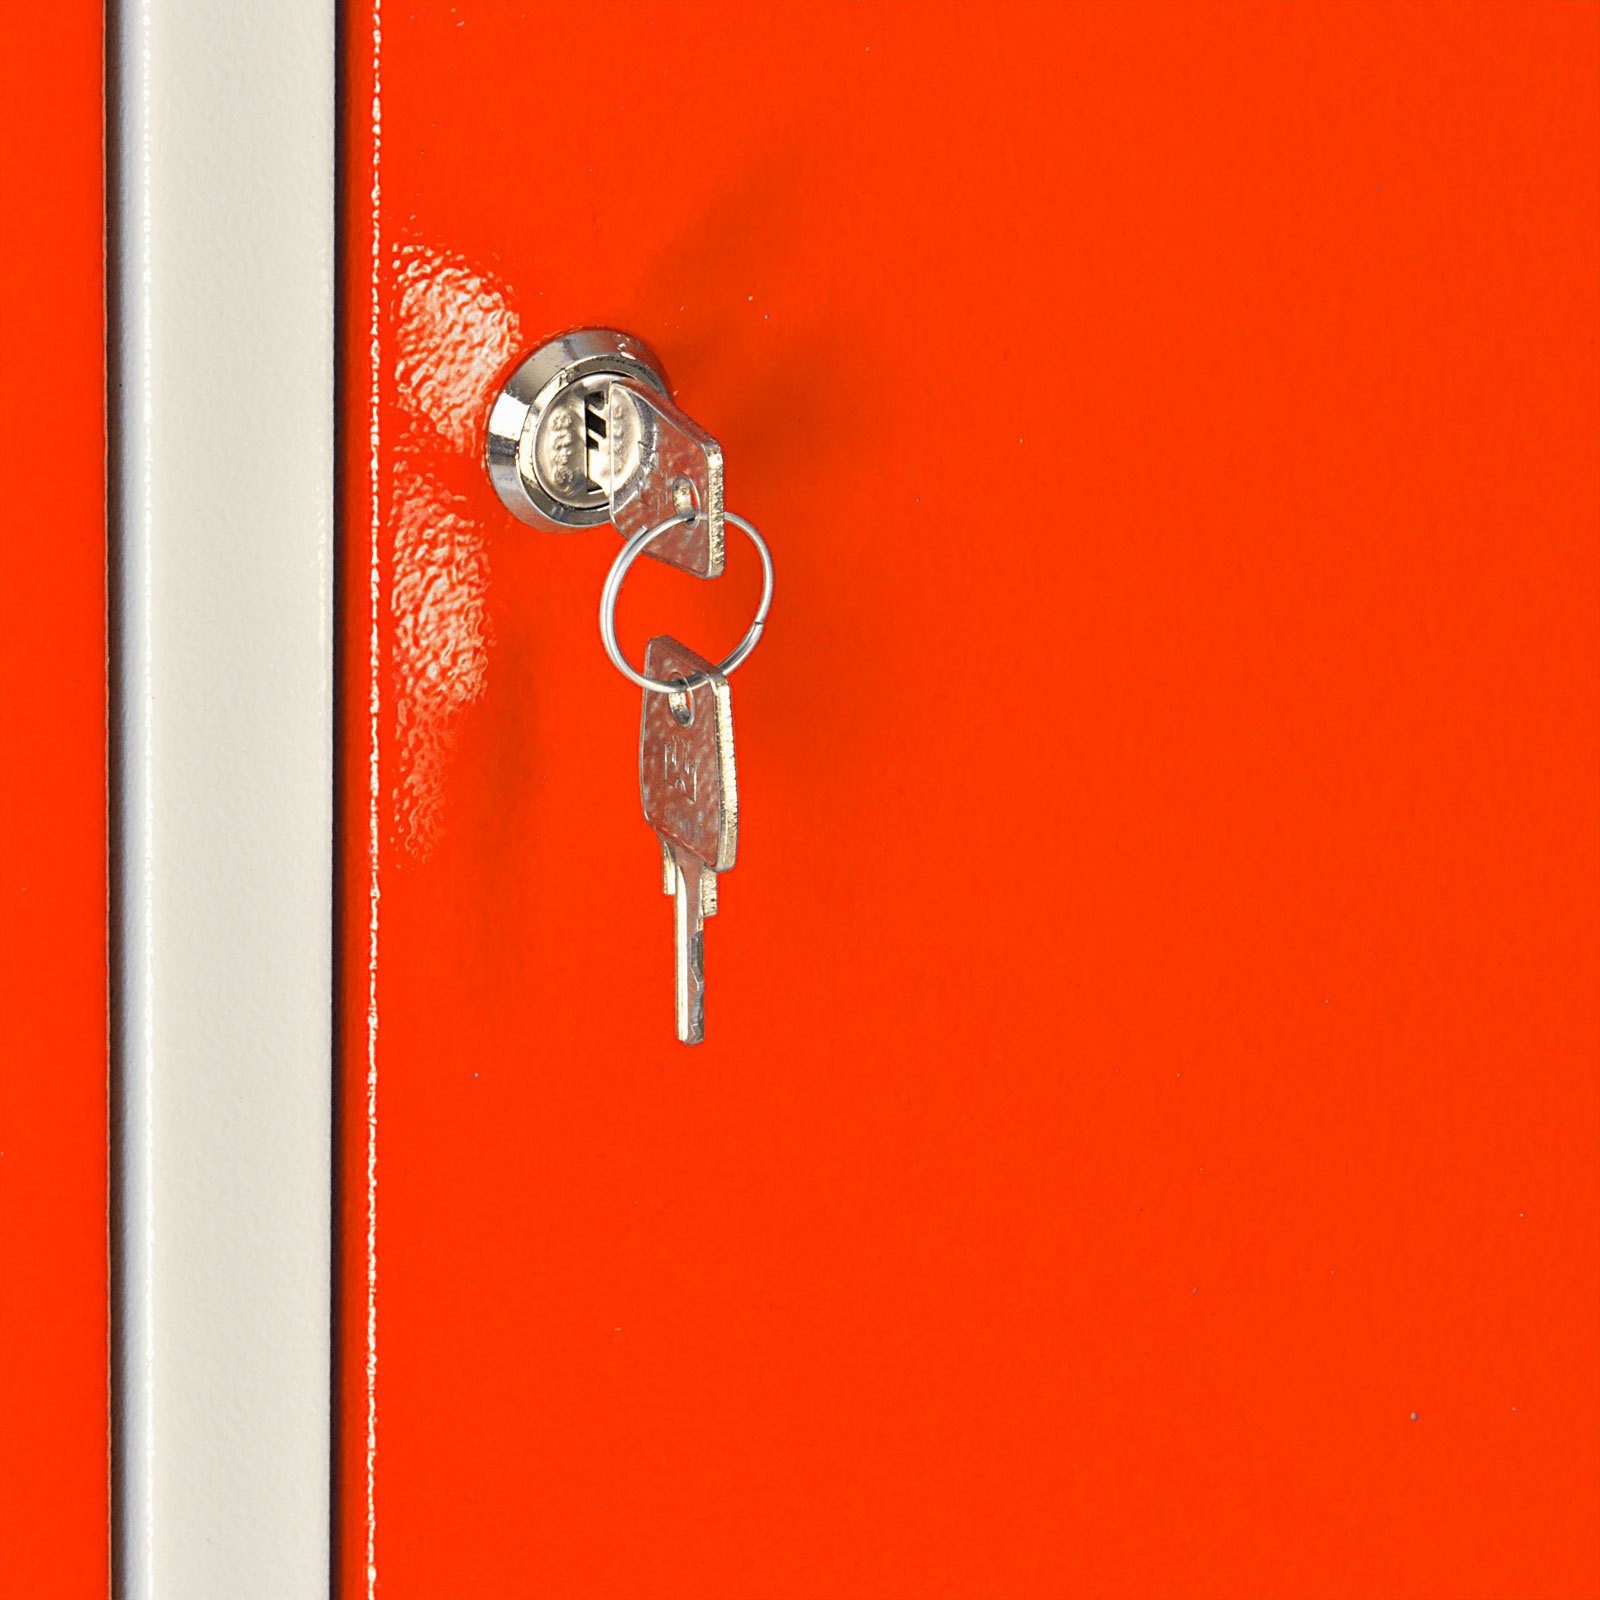 Garderobenschrank Hellrotorange Ermine 2 178x60x50cm, Garderobenschrank PROREGAL® HxBxT Türen, mit Grau/Orange